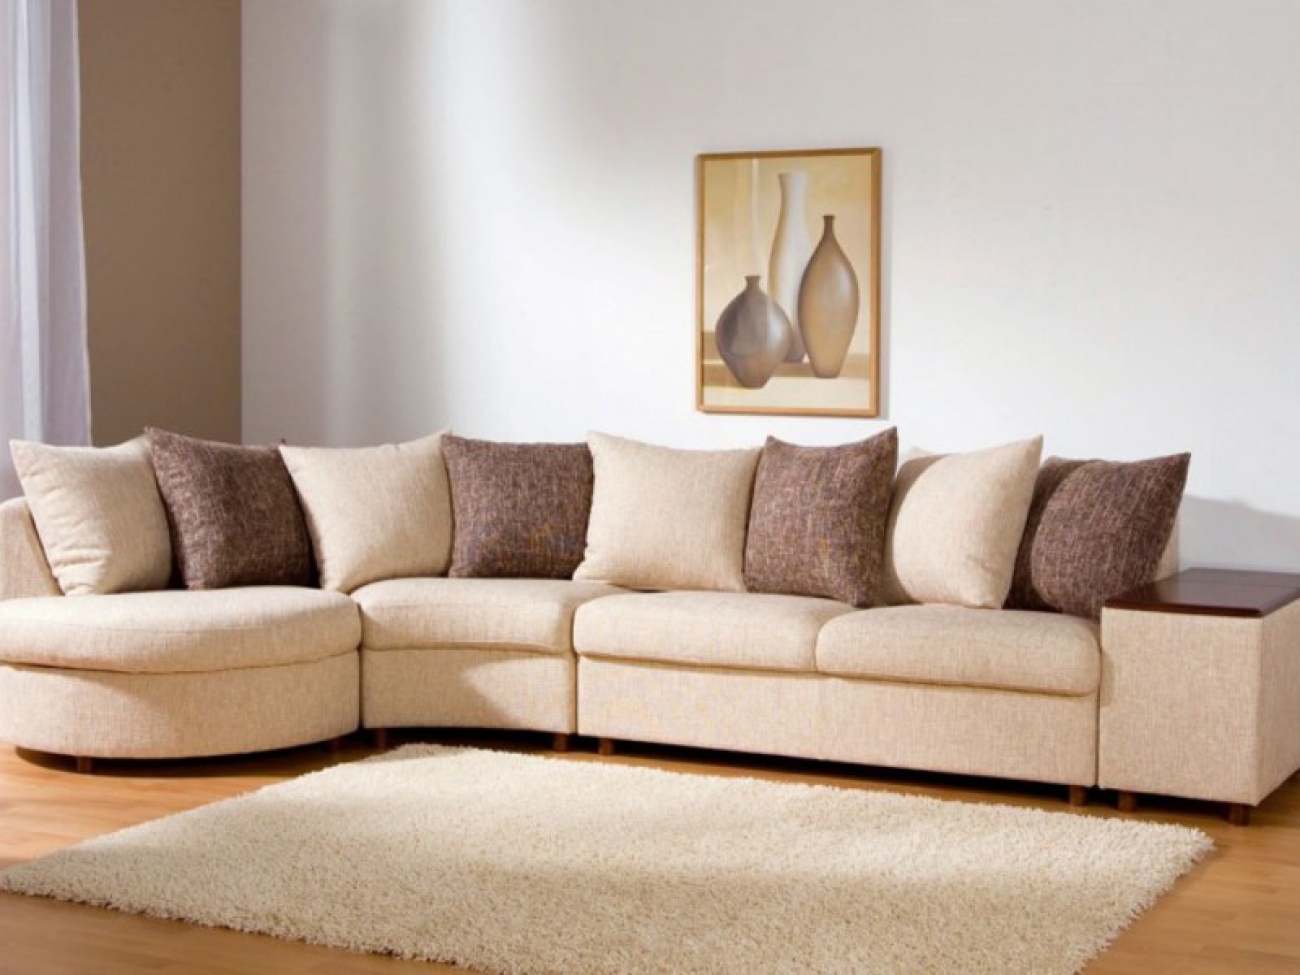 Хорошие мягкие диваны. Красивые диваны для гостиной. Красивый диван в интерьере. Красивые современные диваны. Мягкий уголок в гостиную.